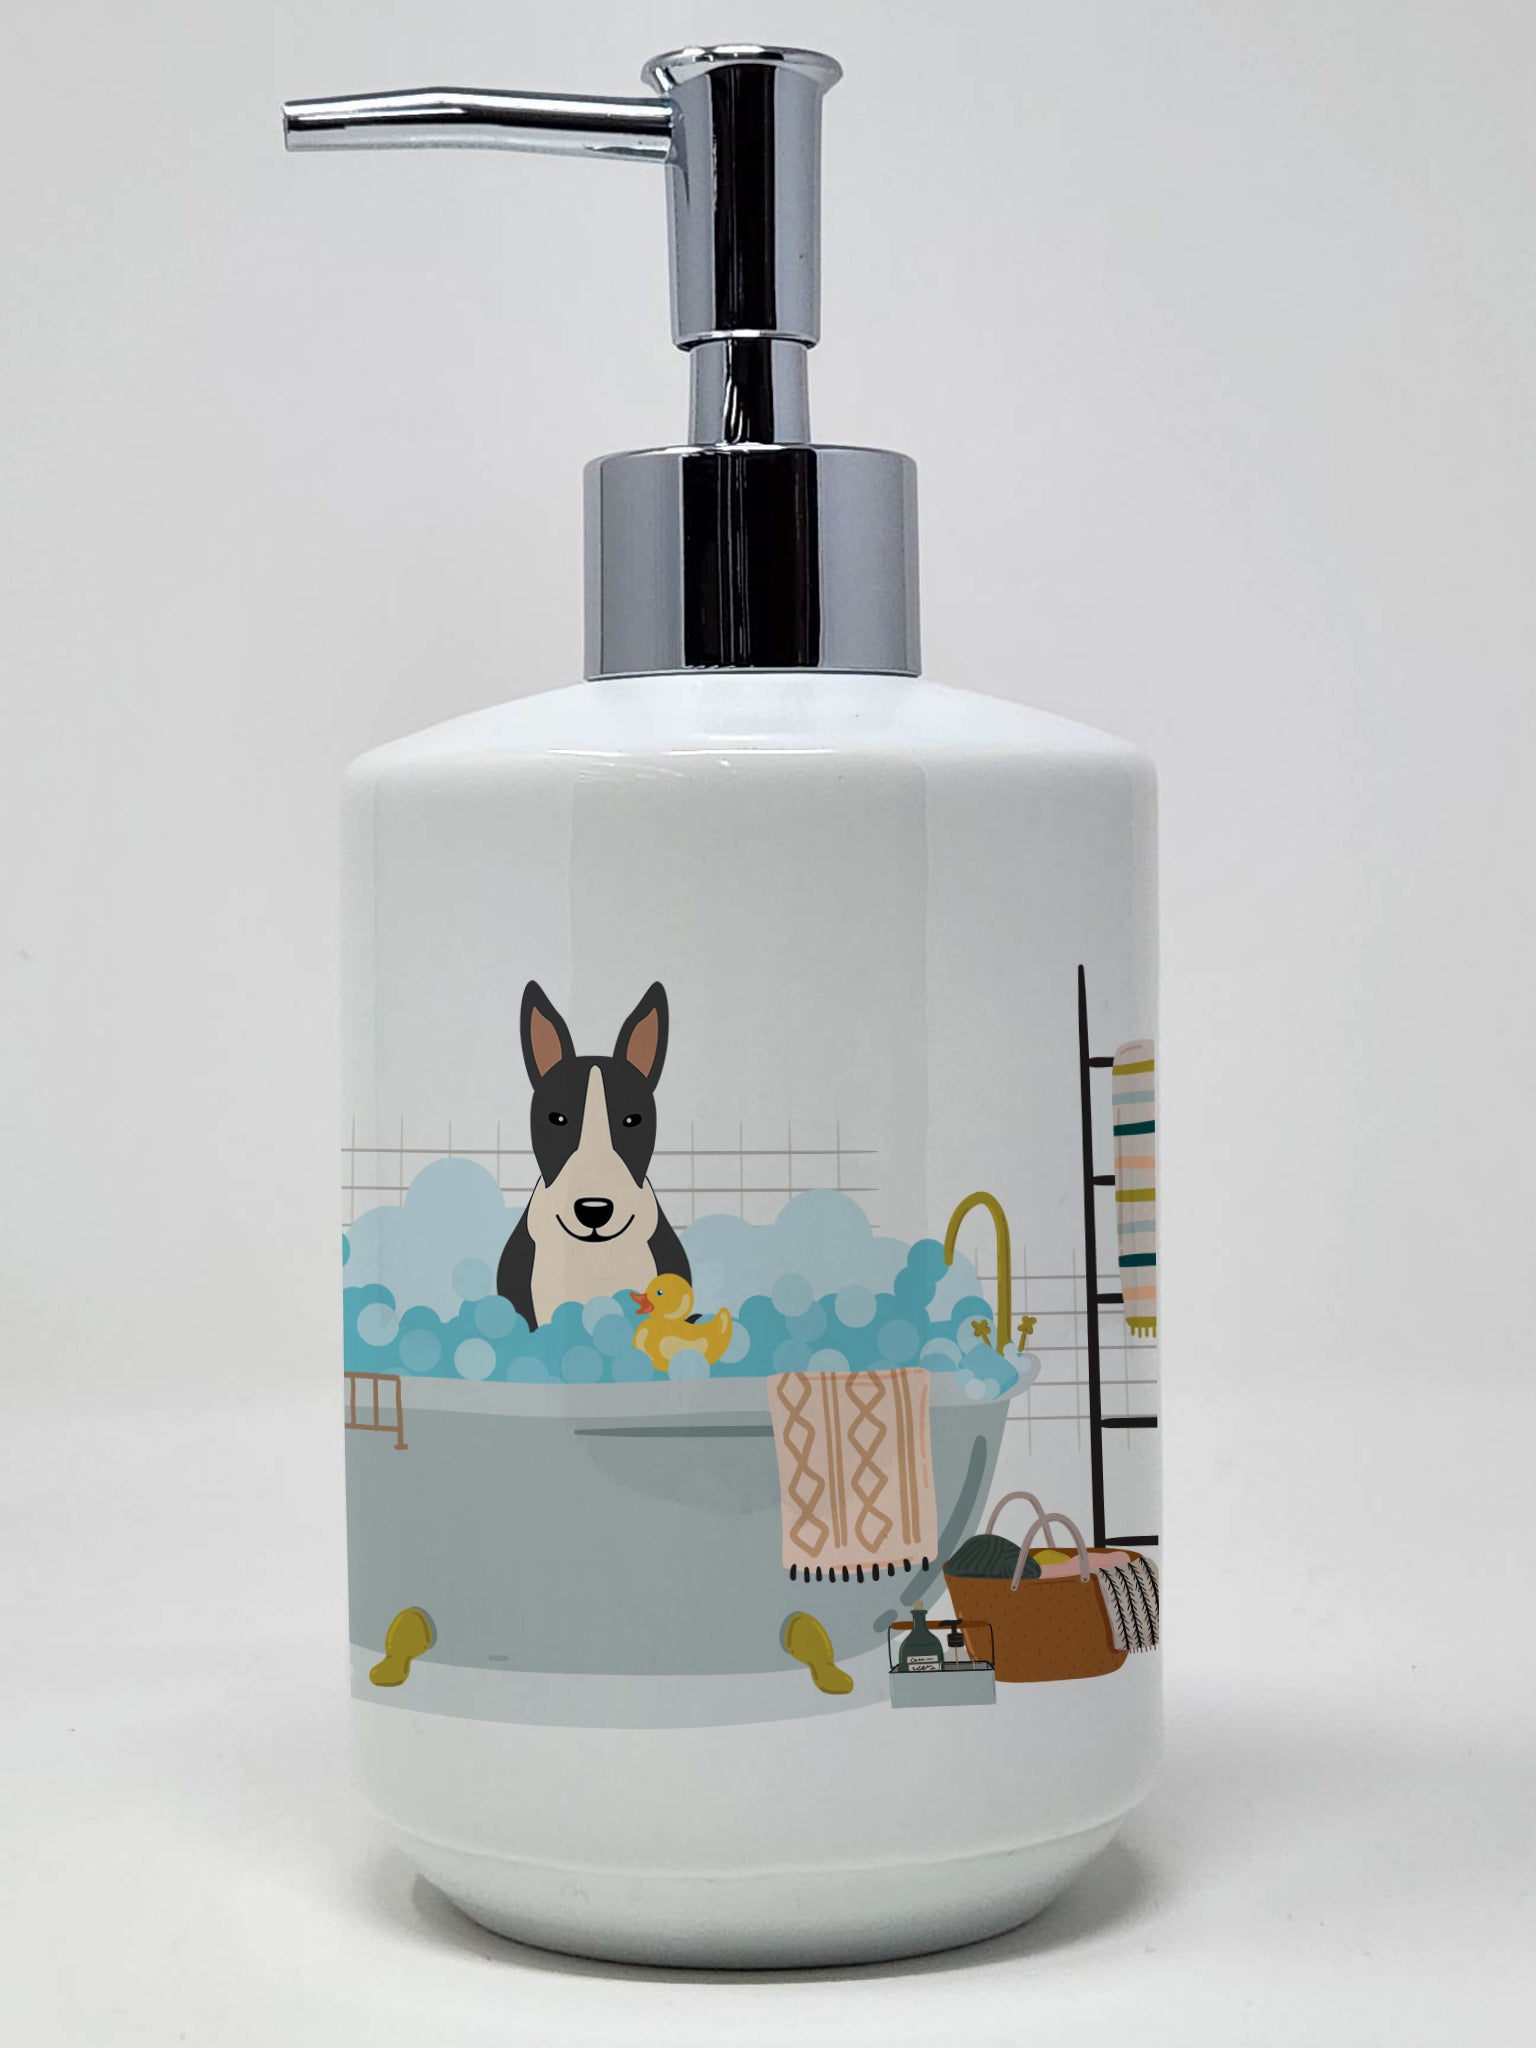 Buy this Black White Bull Terrier in Bathtub Ceramic Soap Dispenser